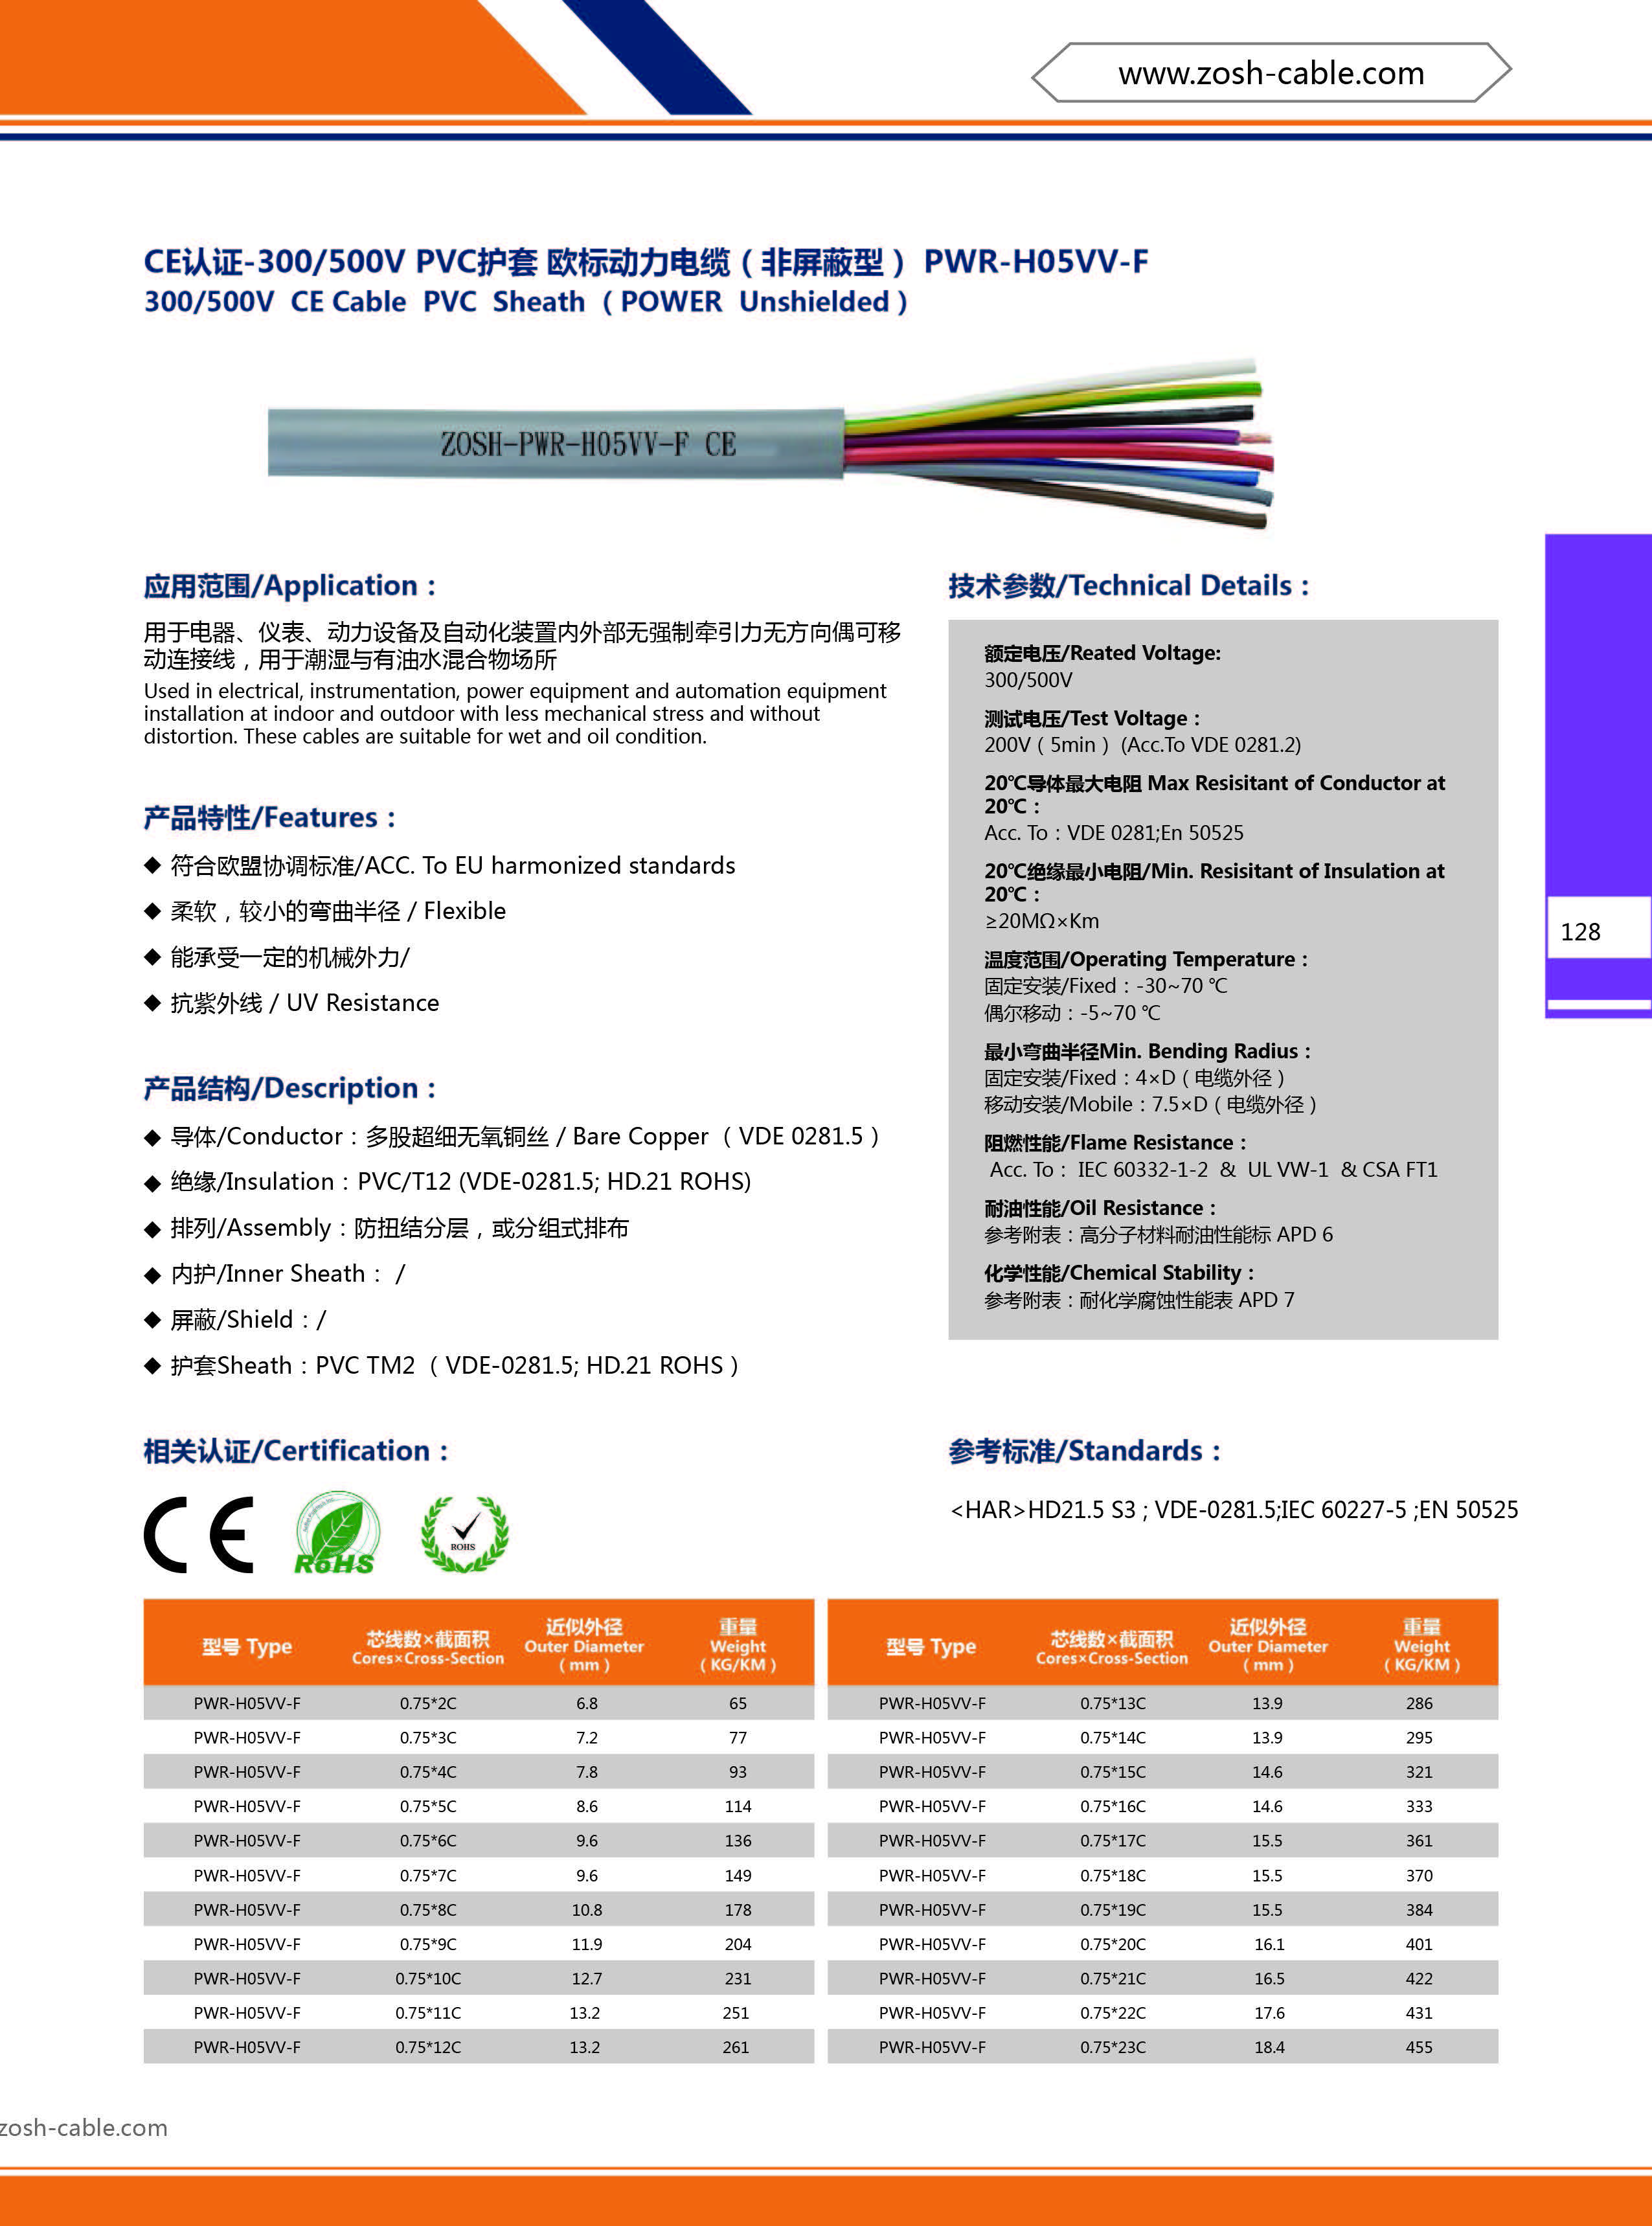 欧标连接线线 H05VV-F电缆-首选 上海昭朔丨符合CE认证丨可出口 CE电缆,欧标电缆,欧标电线,CE电线,欧标电缆线